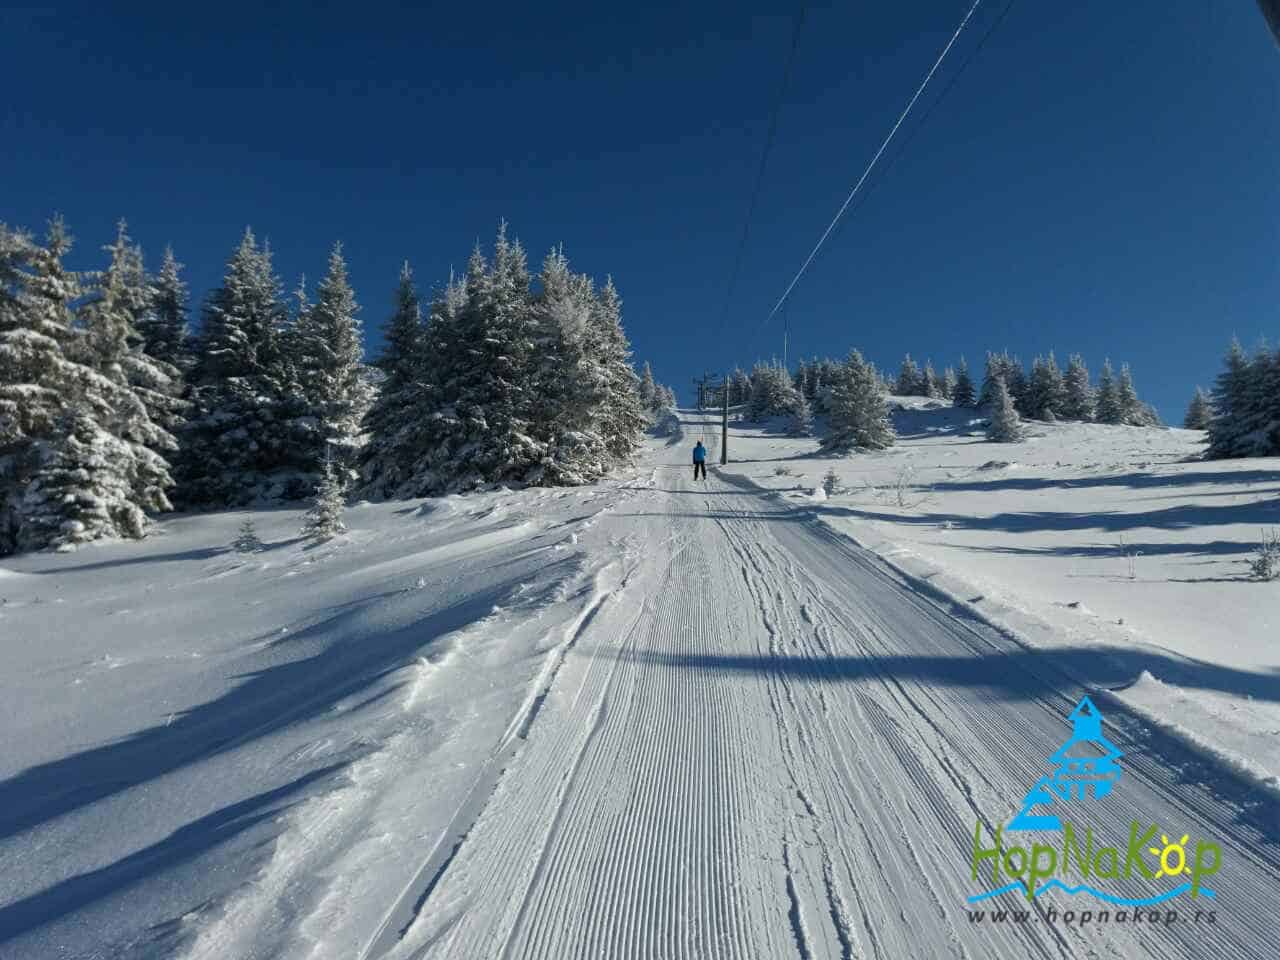 Novo radno vreme skijališta na Kopaoniku: Ski centri Kopaonik i Stara planina od sutra rade pola sata duže. Skijaši i borderi će moći da uživaju u zimskim